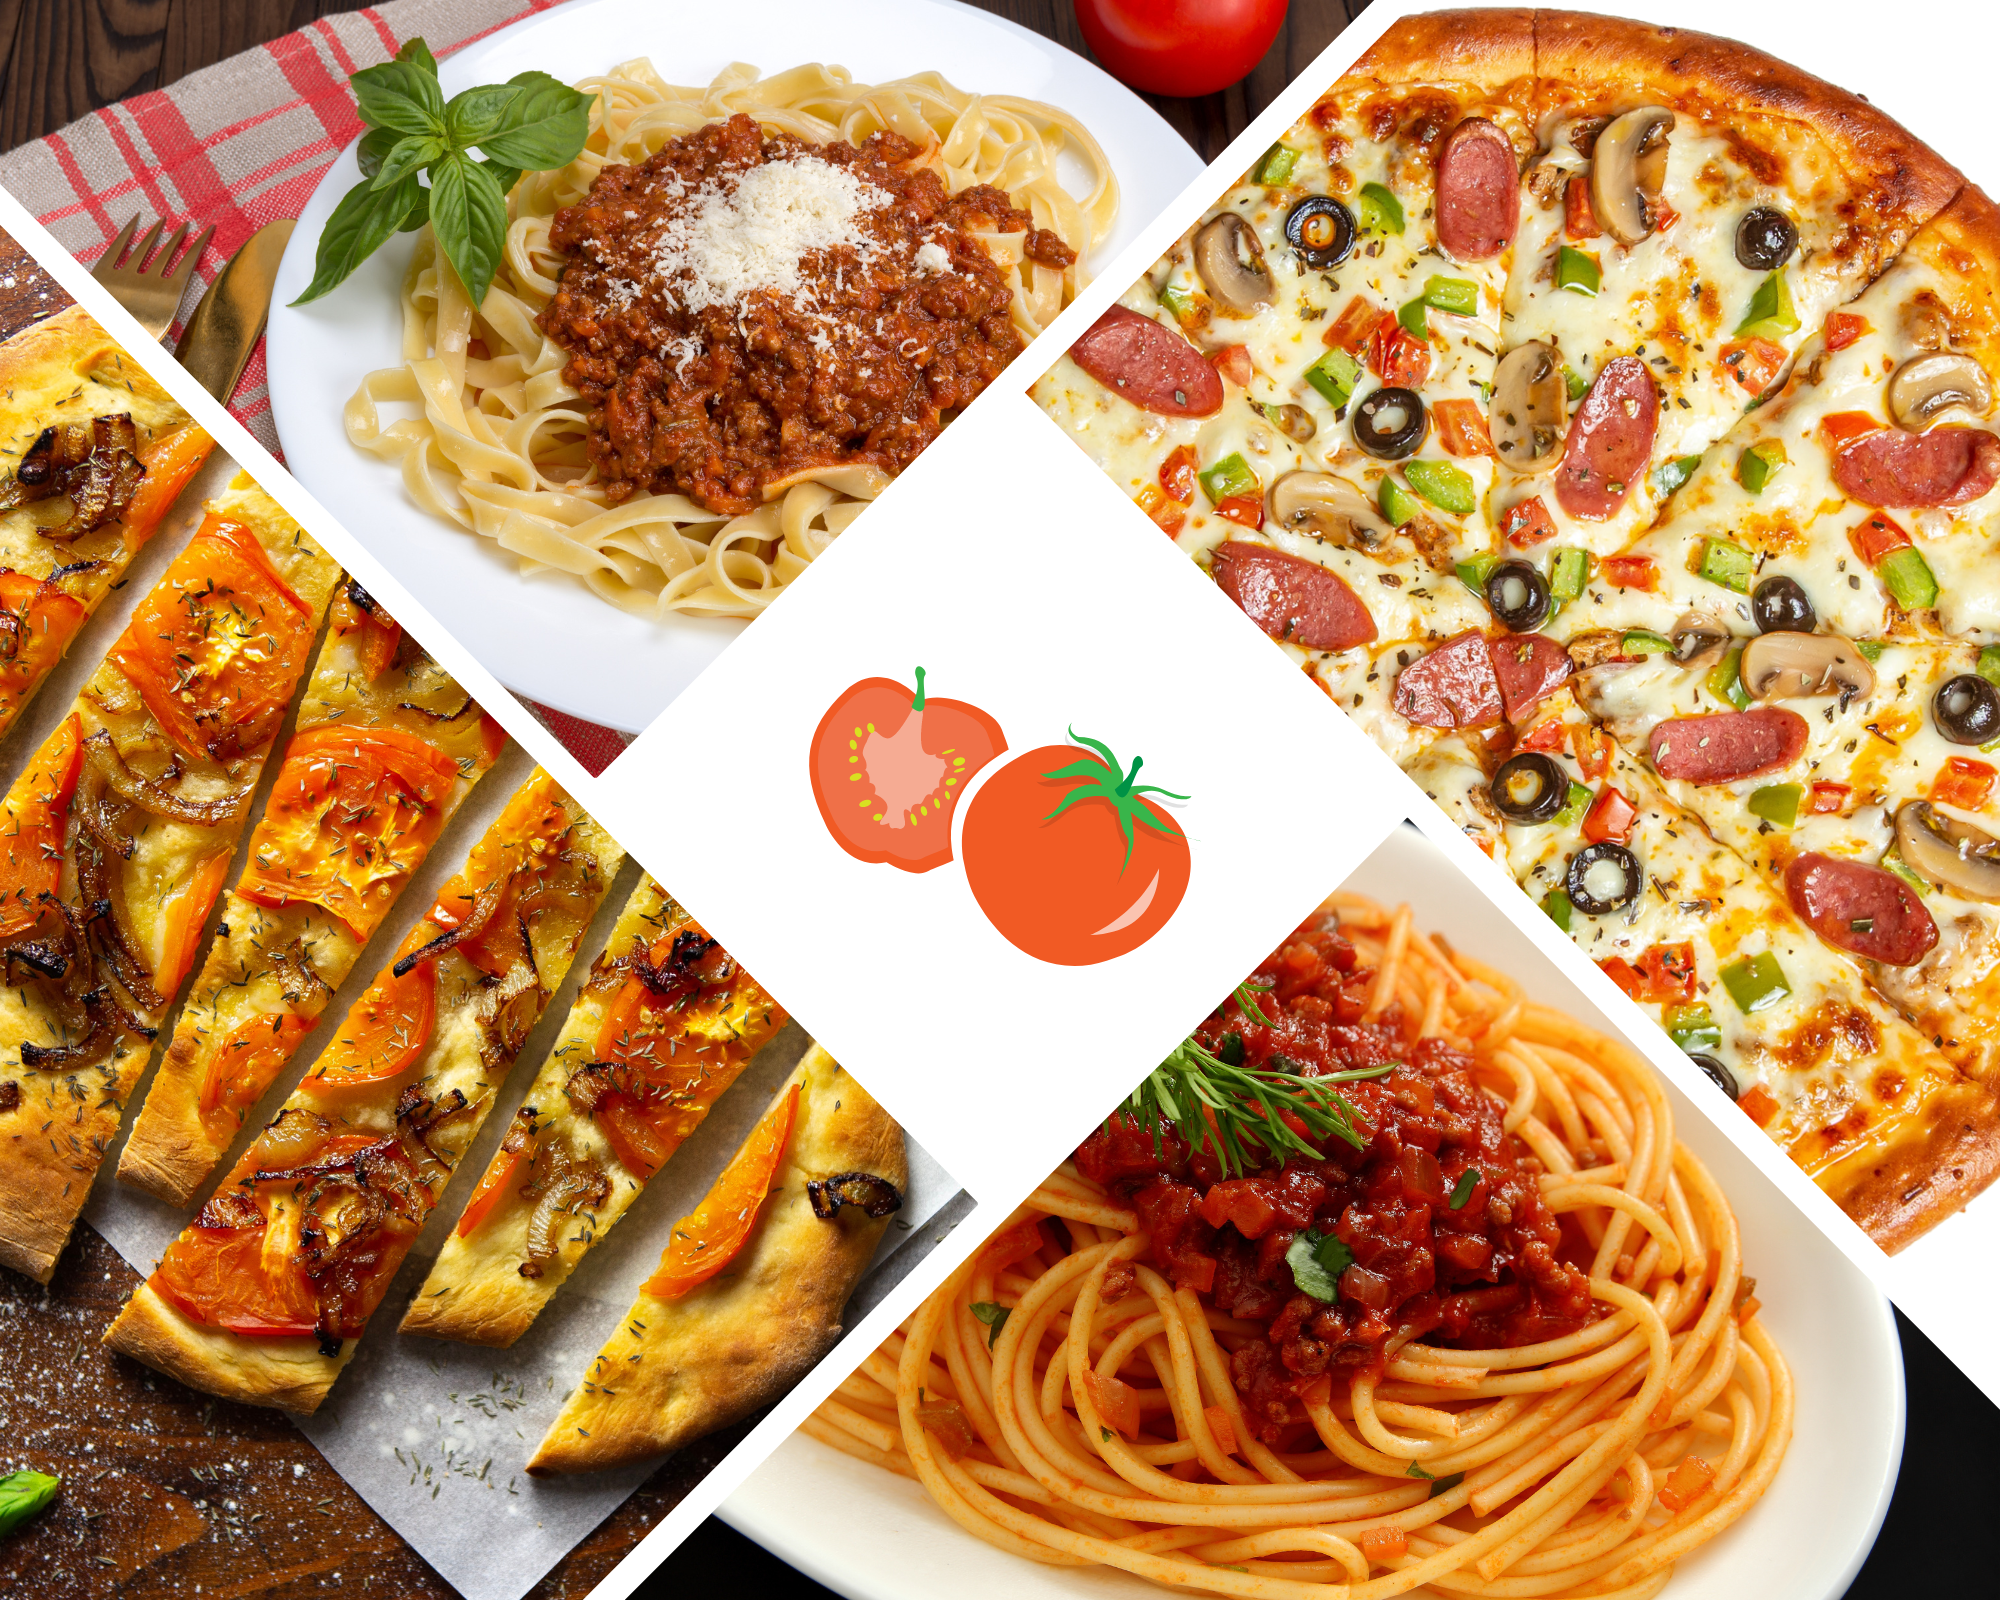 Italian traditional food Italy Pizza, Spaghetti, Foccacia, Ragu Alla Bolognese